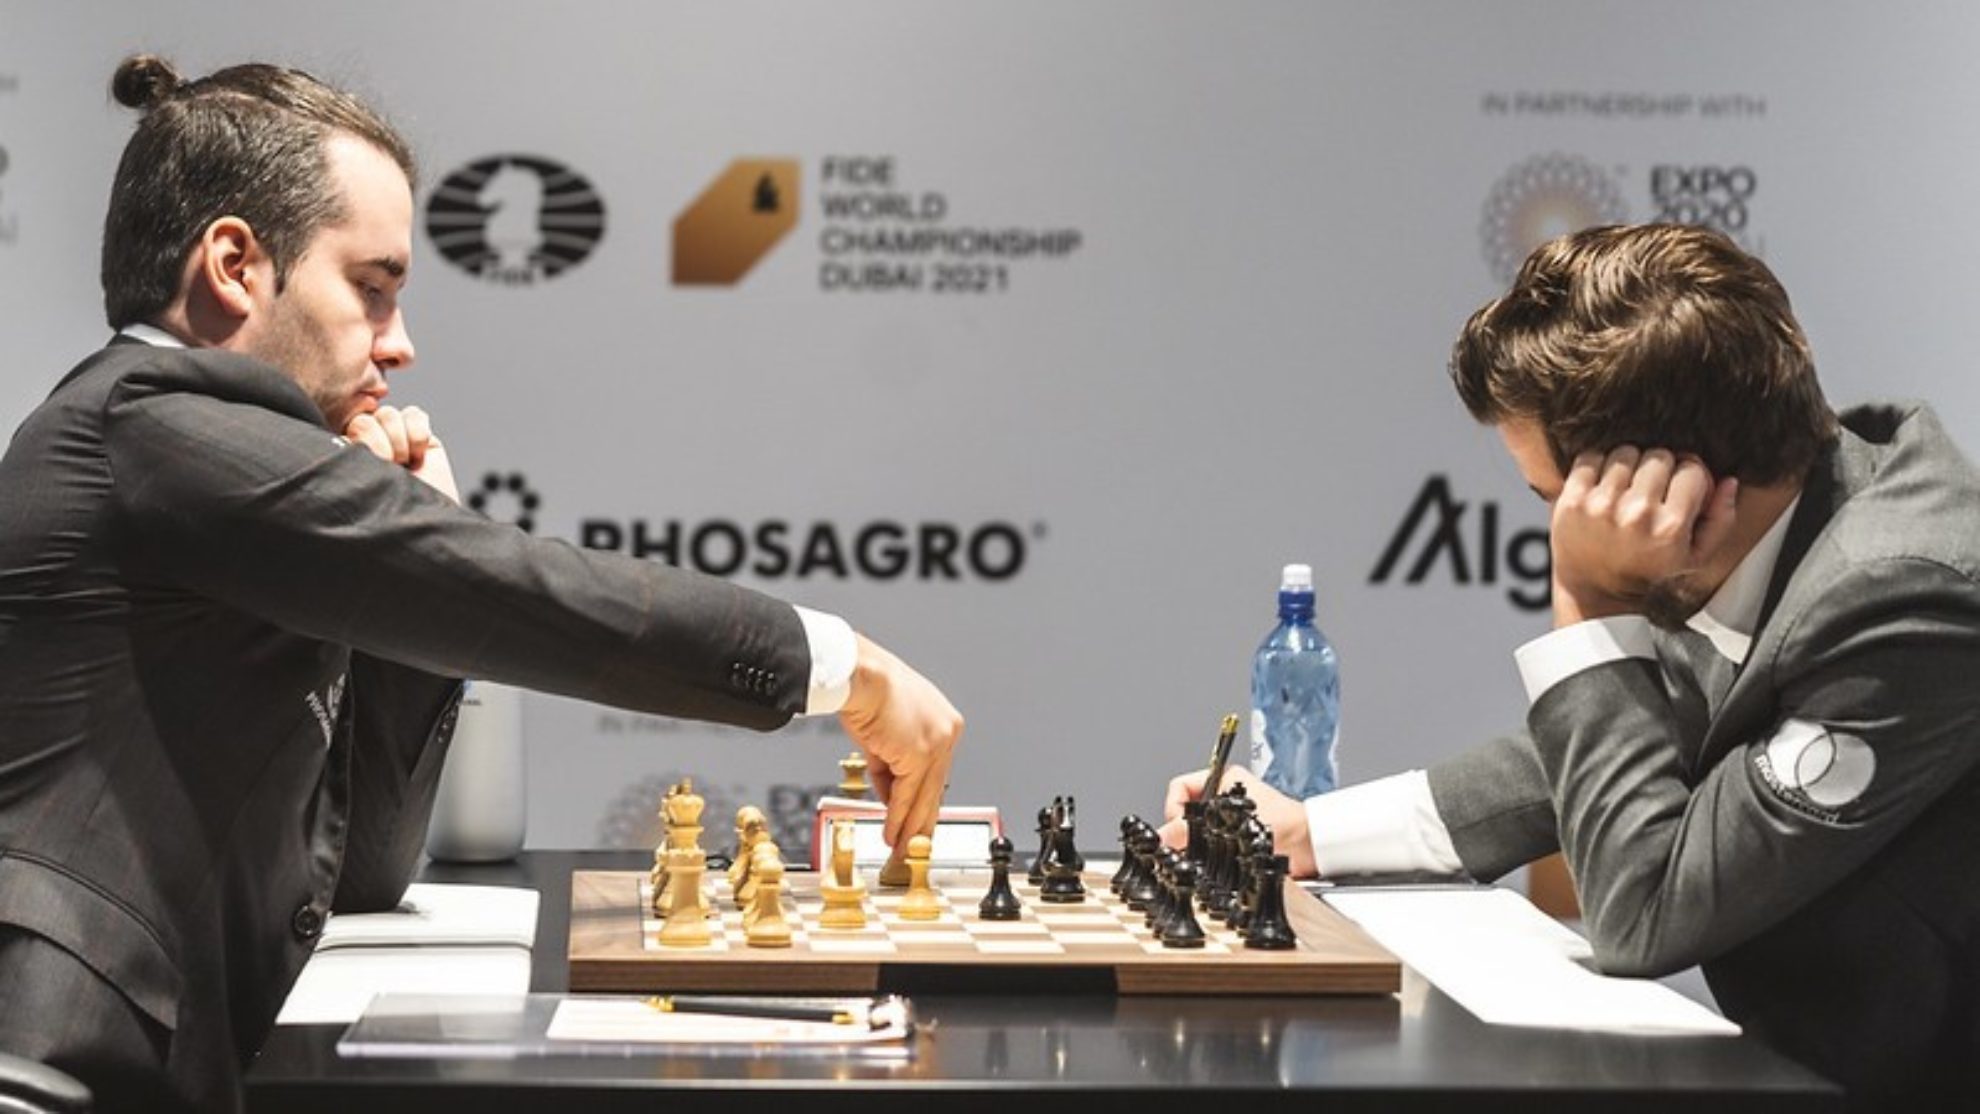 Nepomniachtchi y Carlsen, en la séptima partida del Mundial.